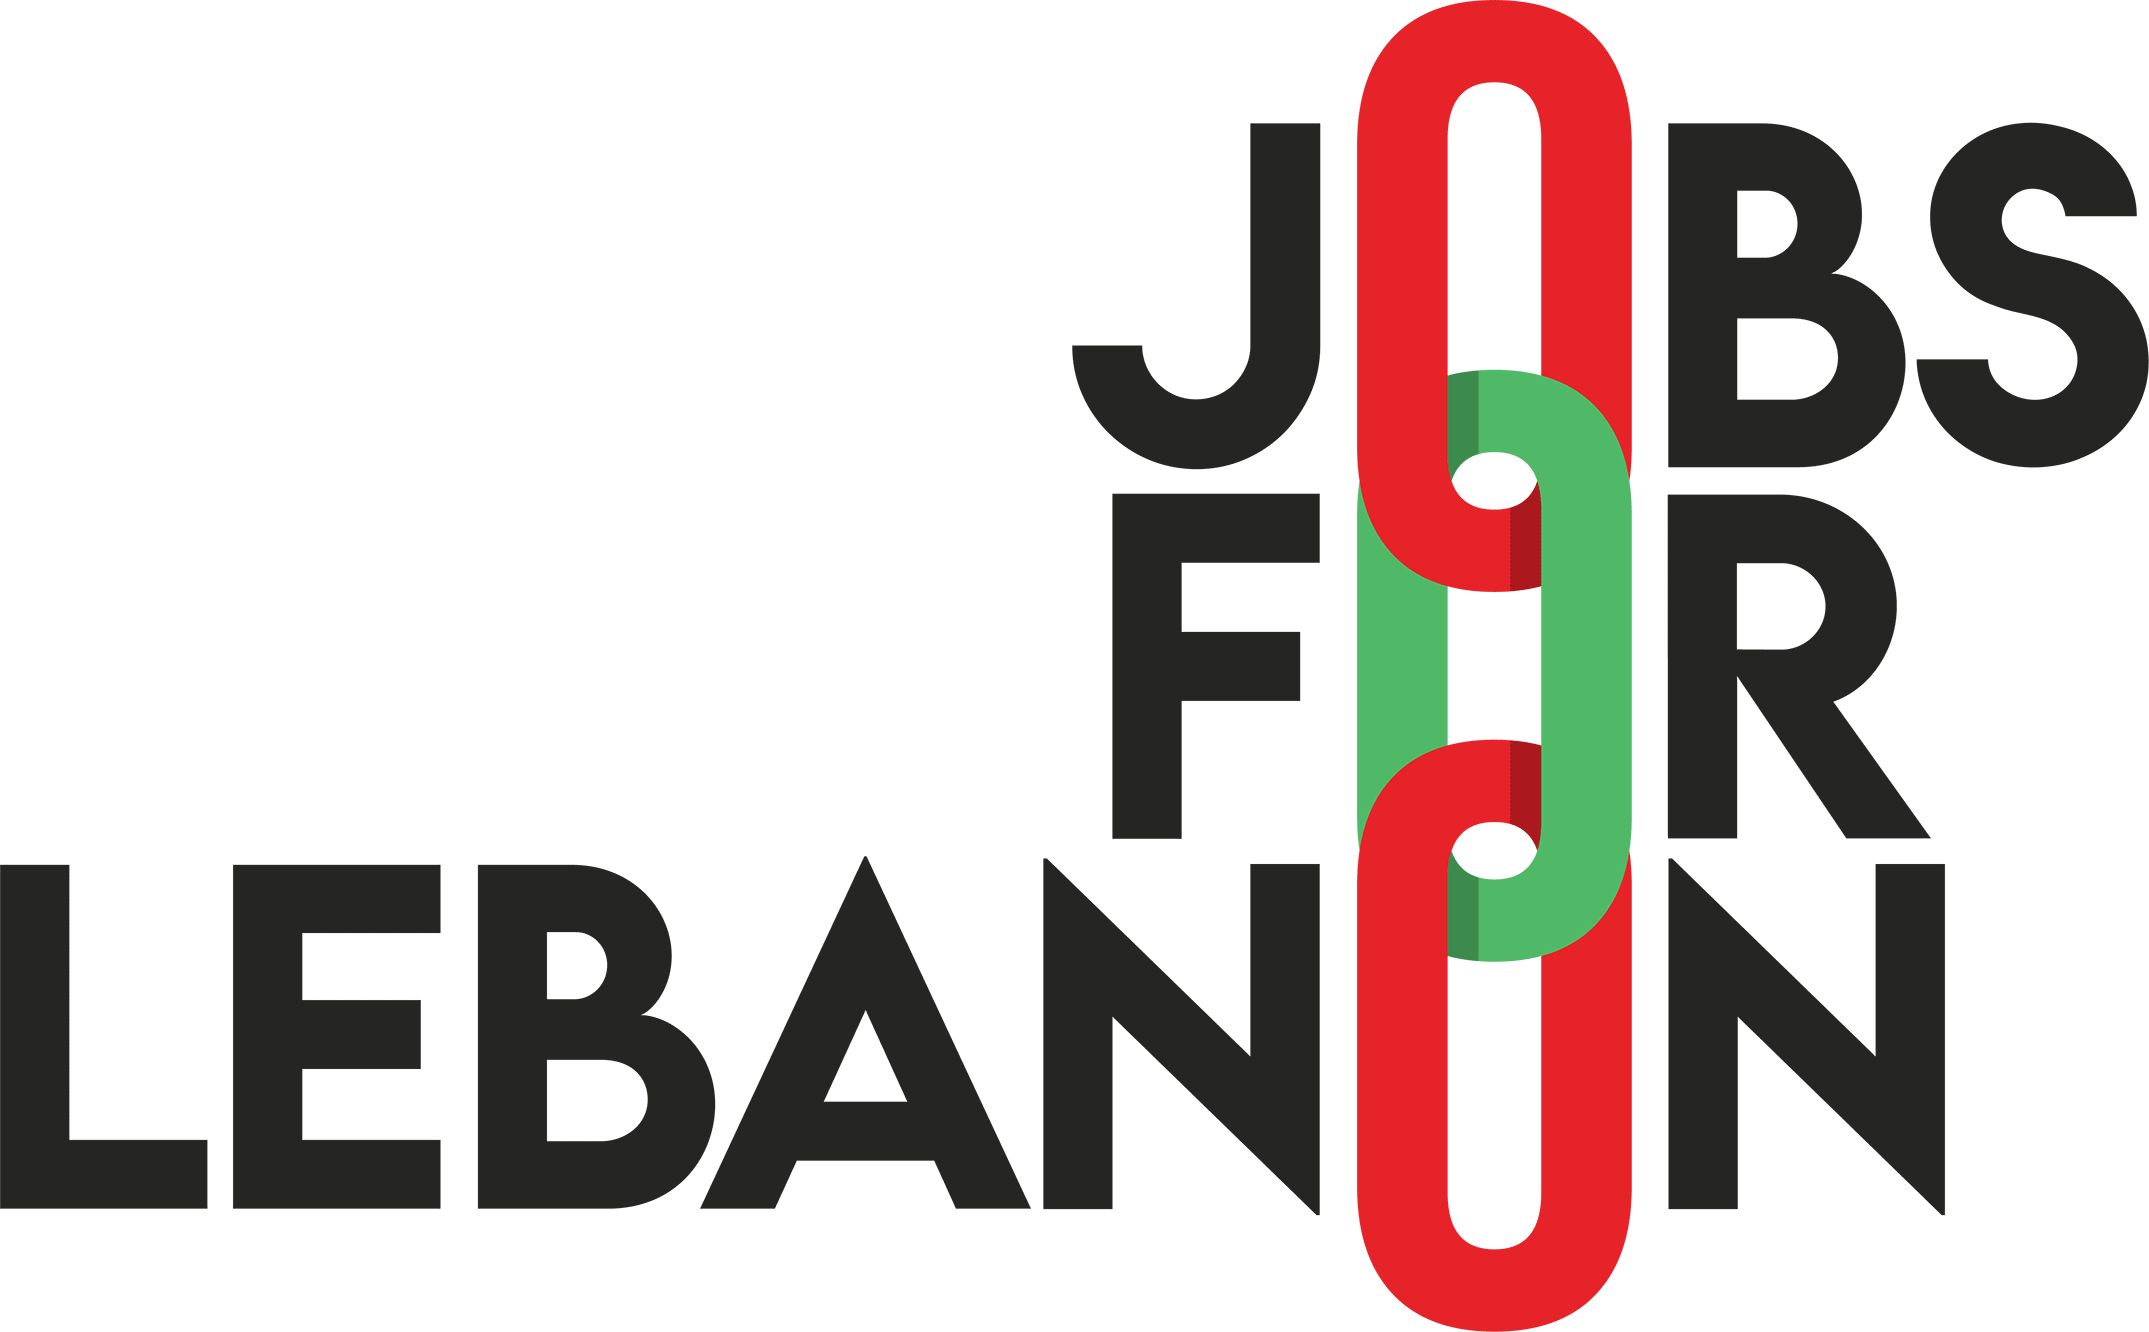 Jobs for Lebanon